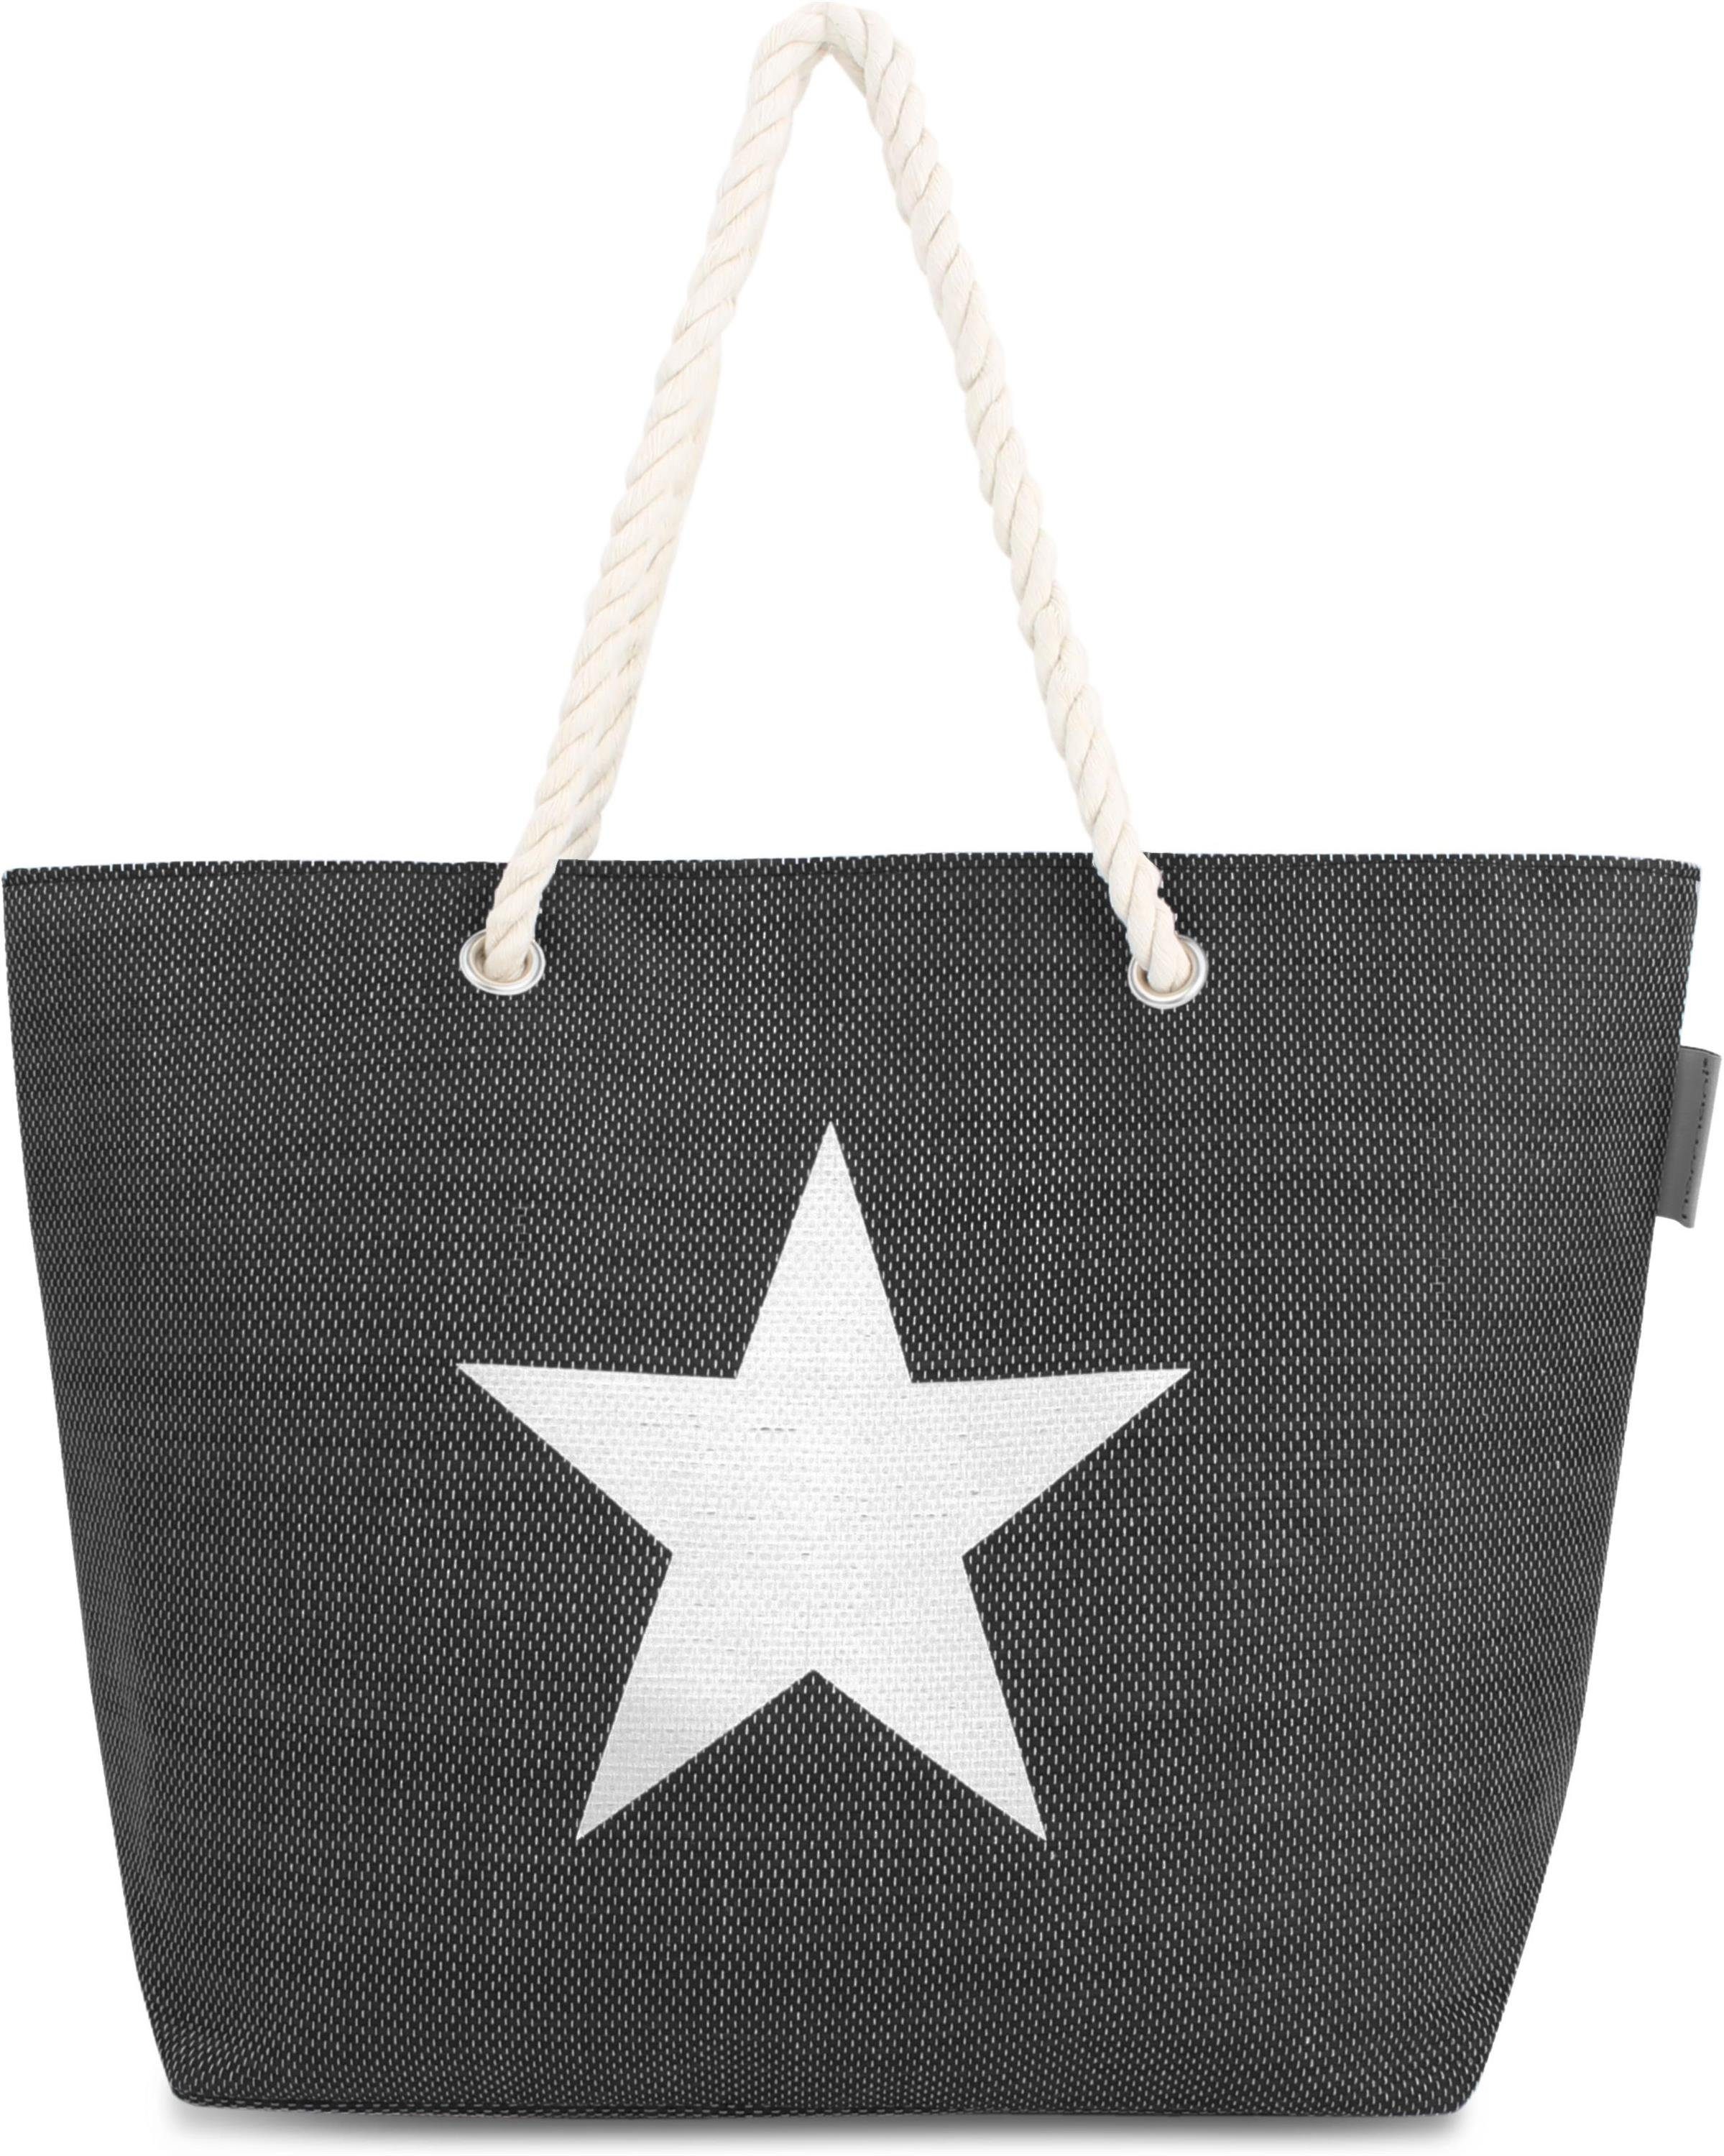 Bequeme als Black Henkeltasche Star tragbar Strandtasche Schultertasche Sommer-Umhängetasche, normani Strandtasche,